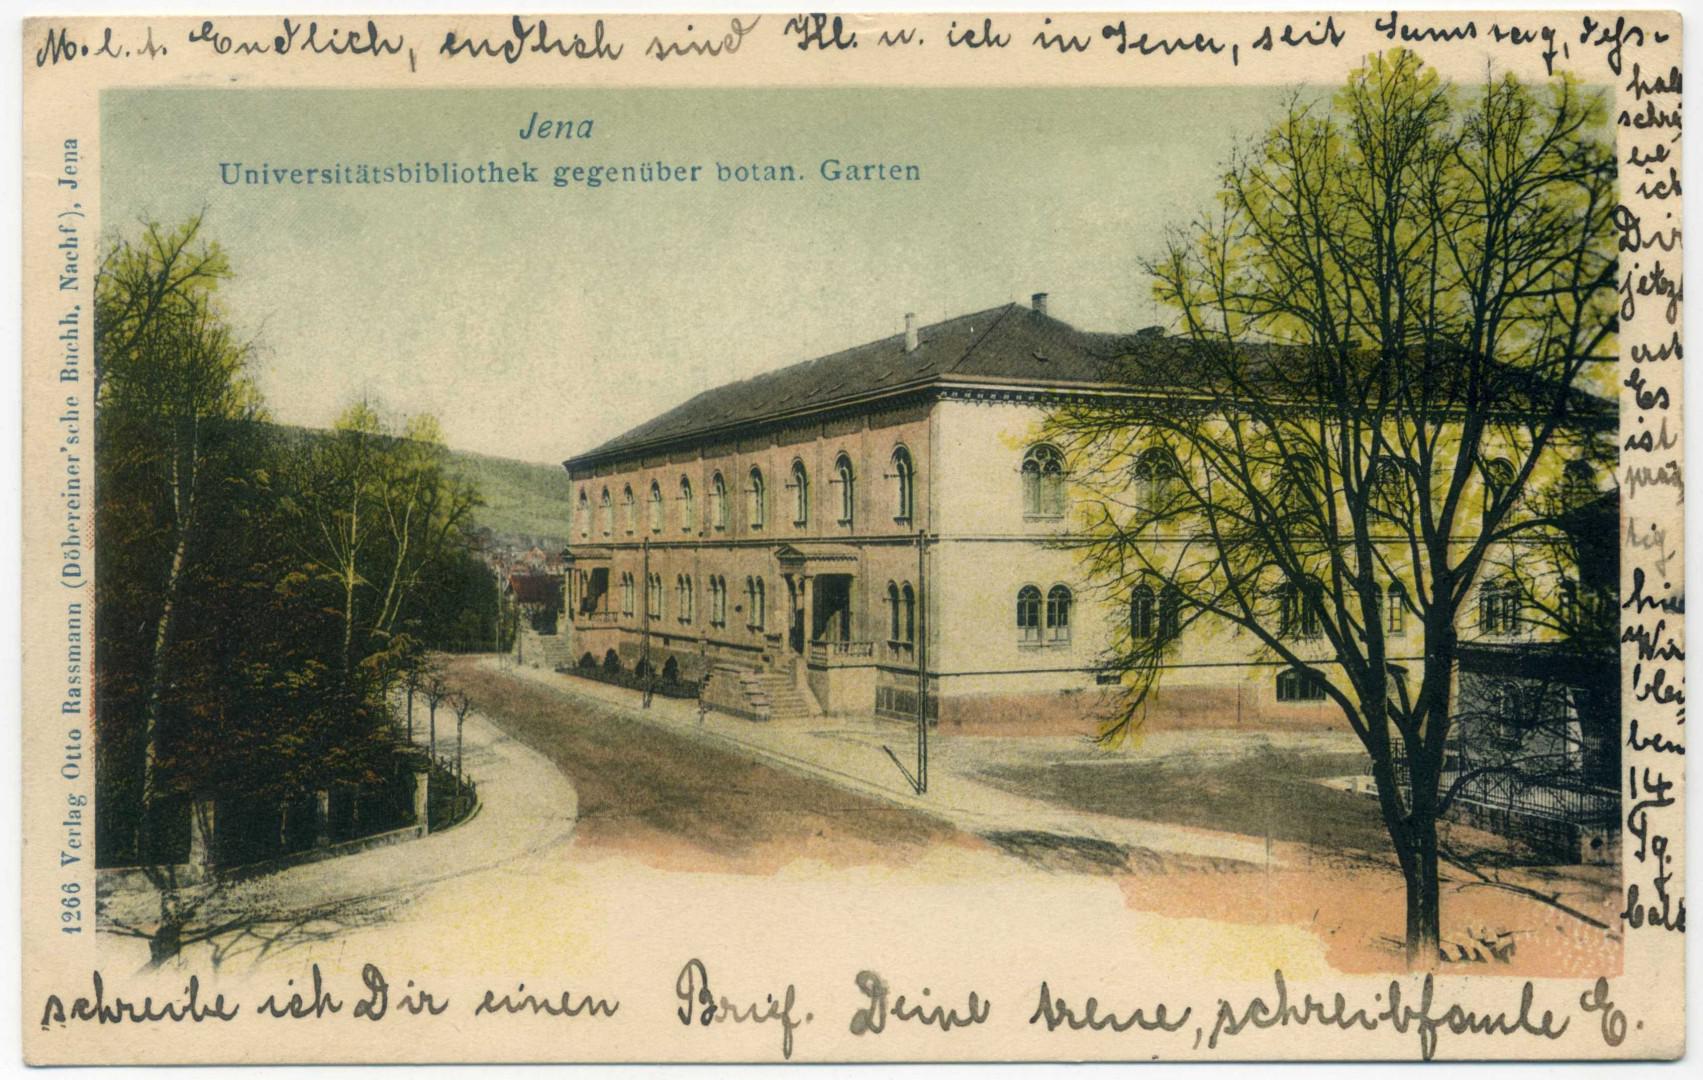 Jena: Universitätsbibliothek